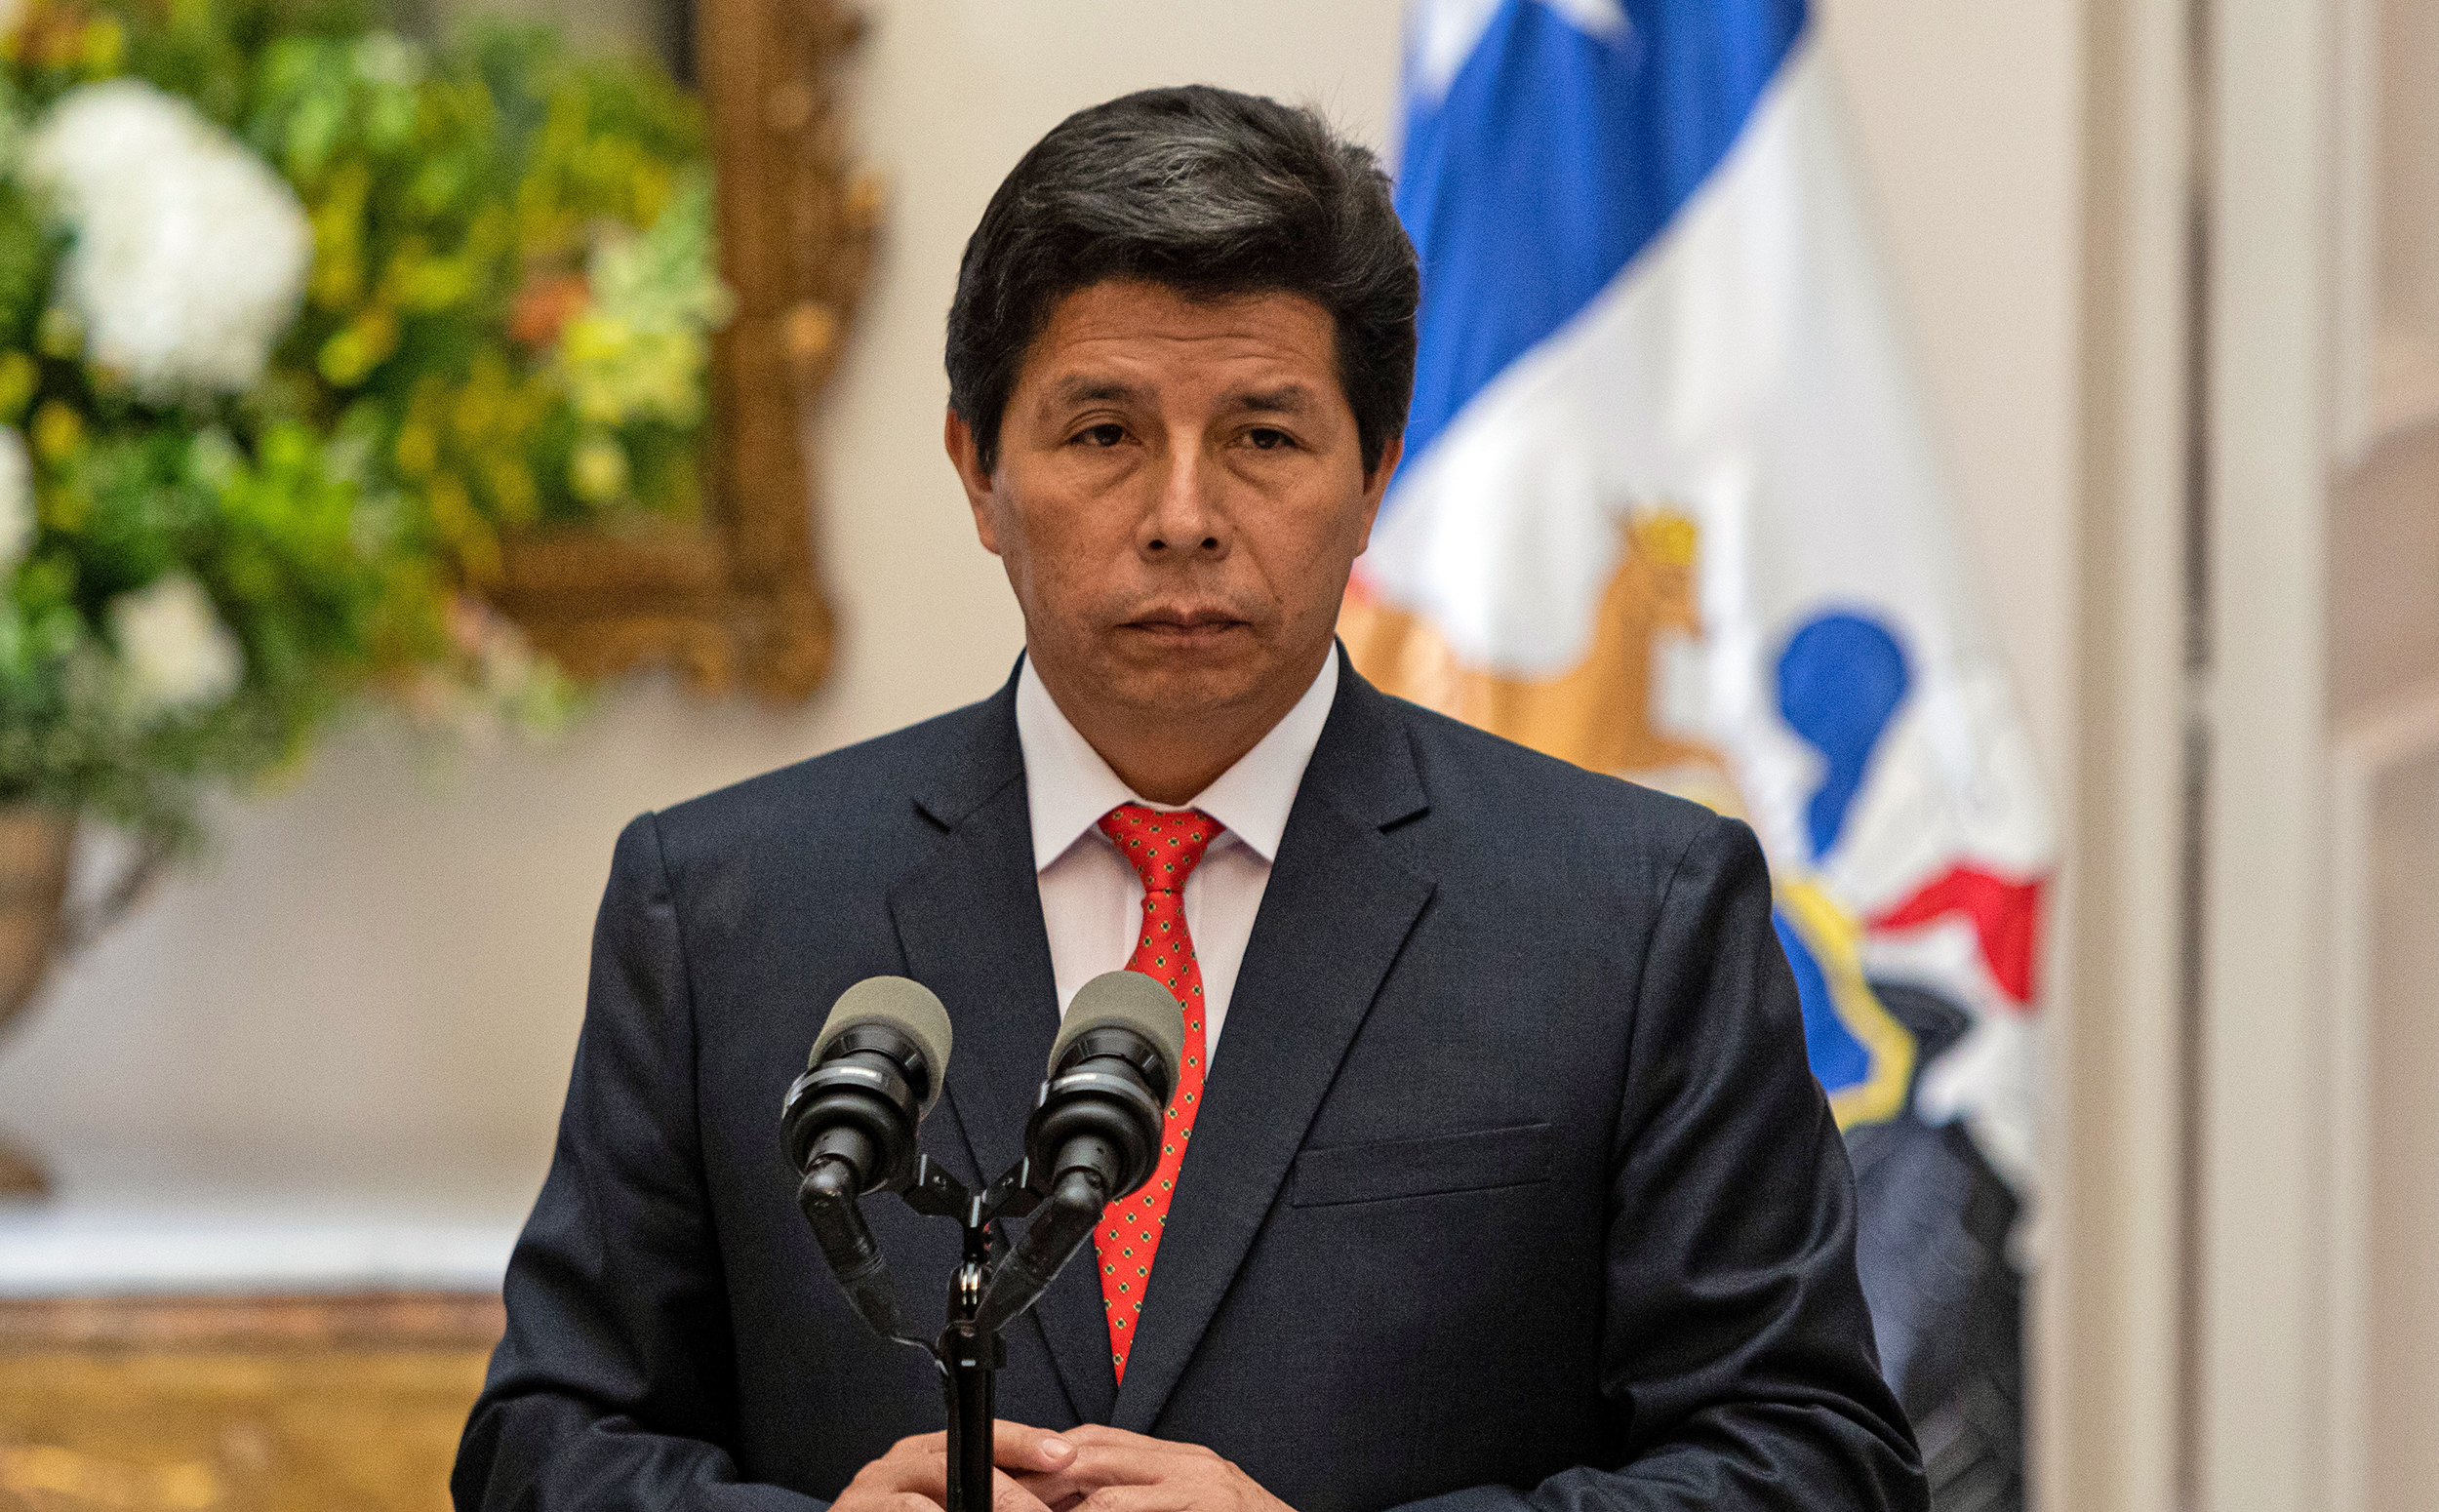 Pérou: la détention provisoire de l'ancien président Castillo portée à 36 mois